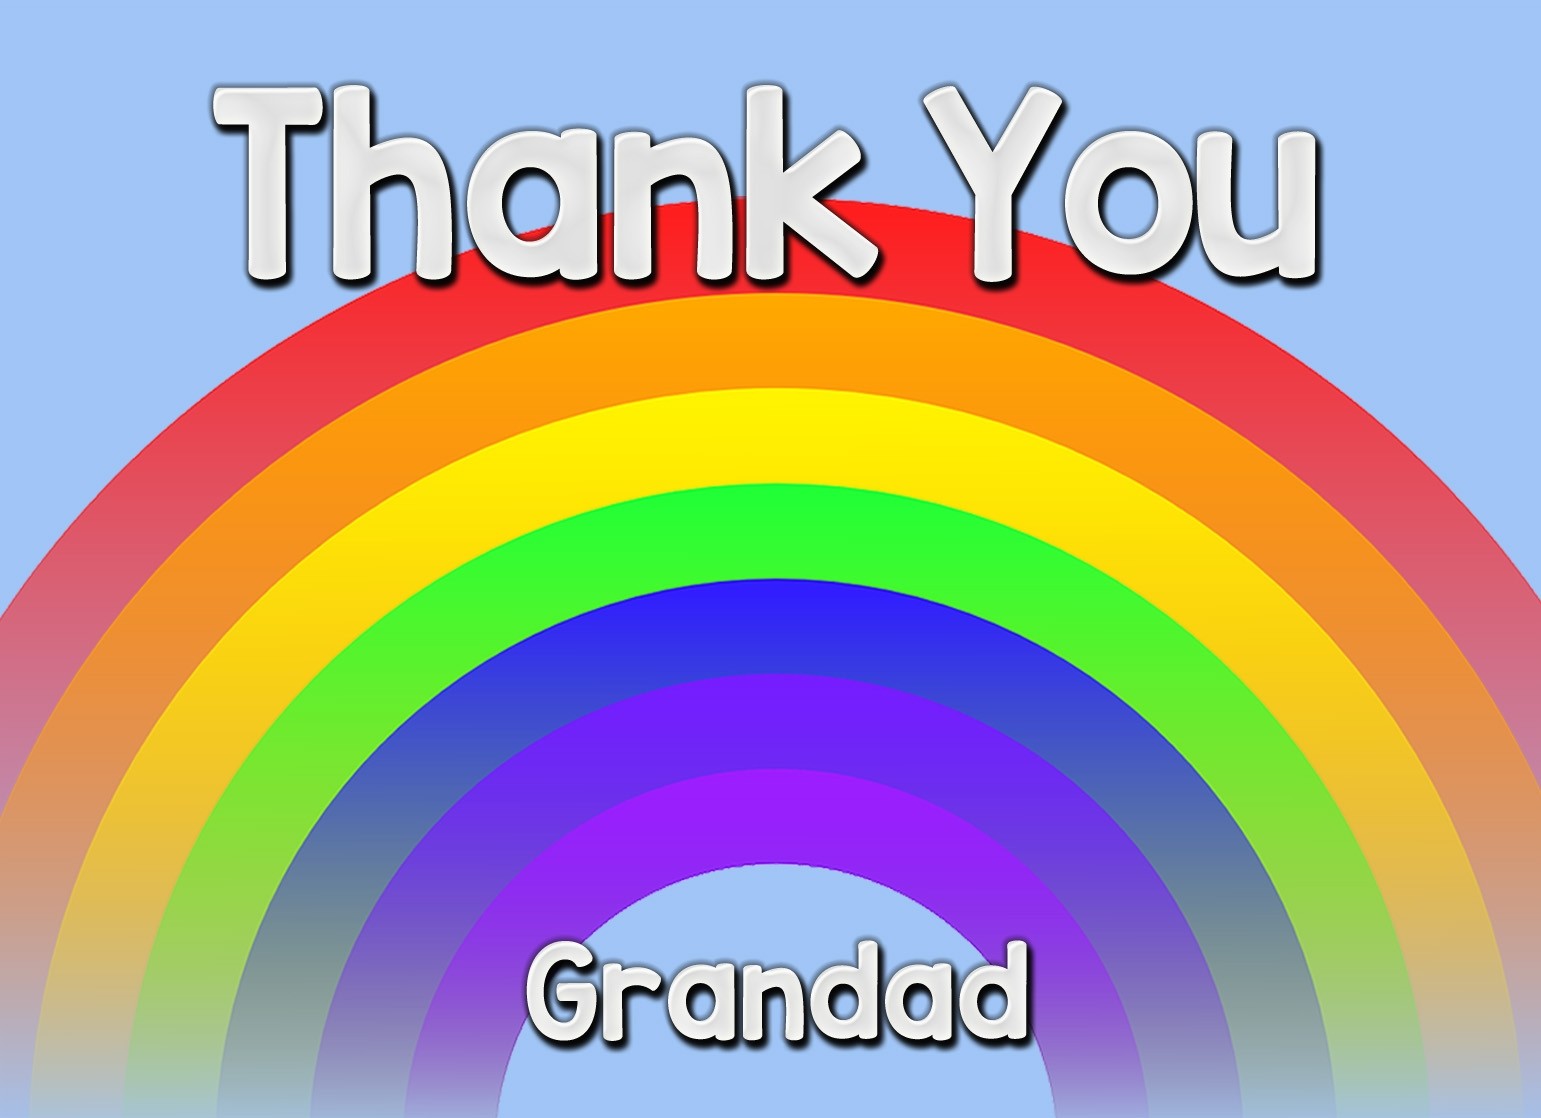 Thank You 'Grandad' Rainbow Greeting Card